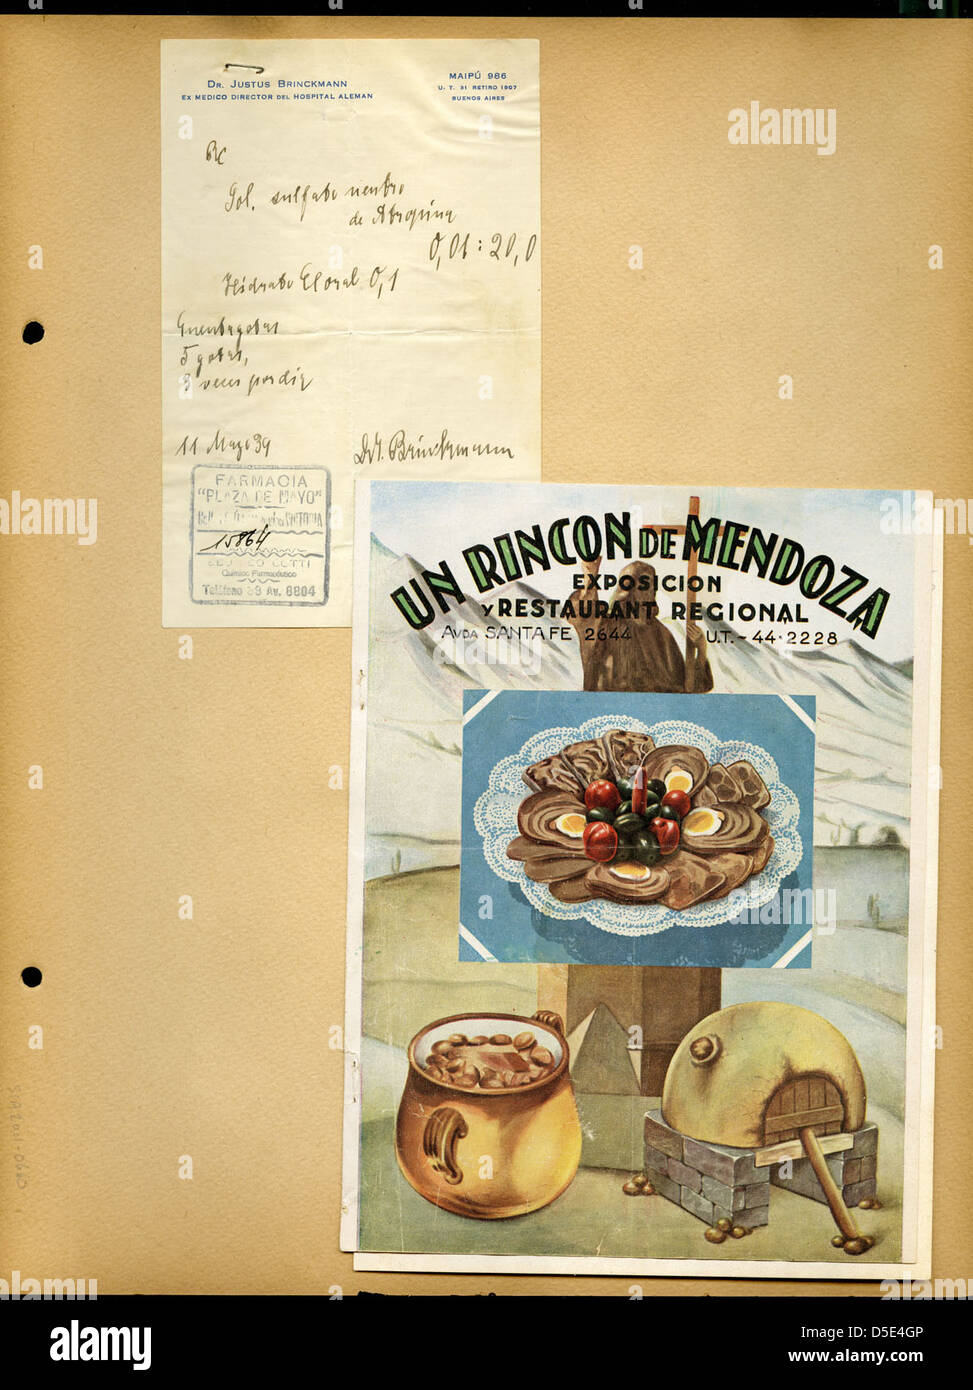 Un Rincon de Mendoza menu cover Stock Photo